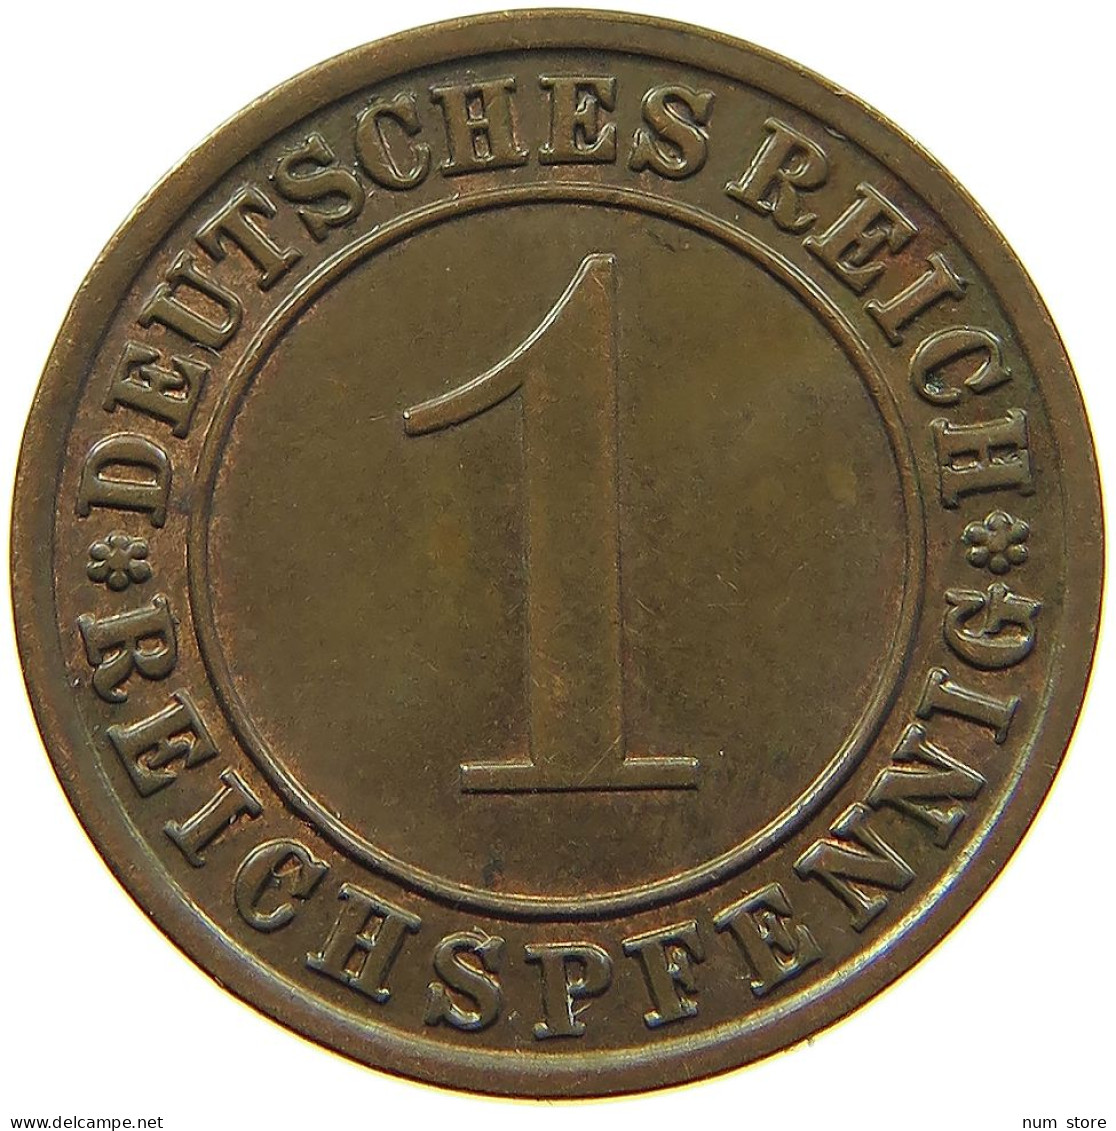 WEIMARER REPUBLIK REICHSPFENNIG 1934 A  #MA 100174 - 1 Rentenpfennig & 1 Reichspfennig